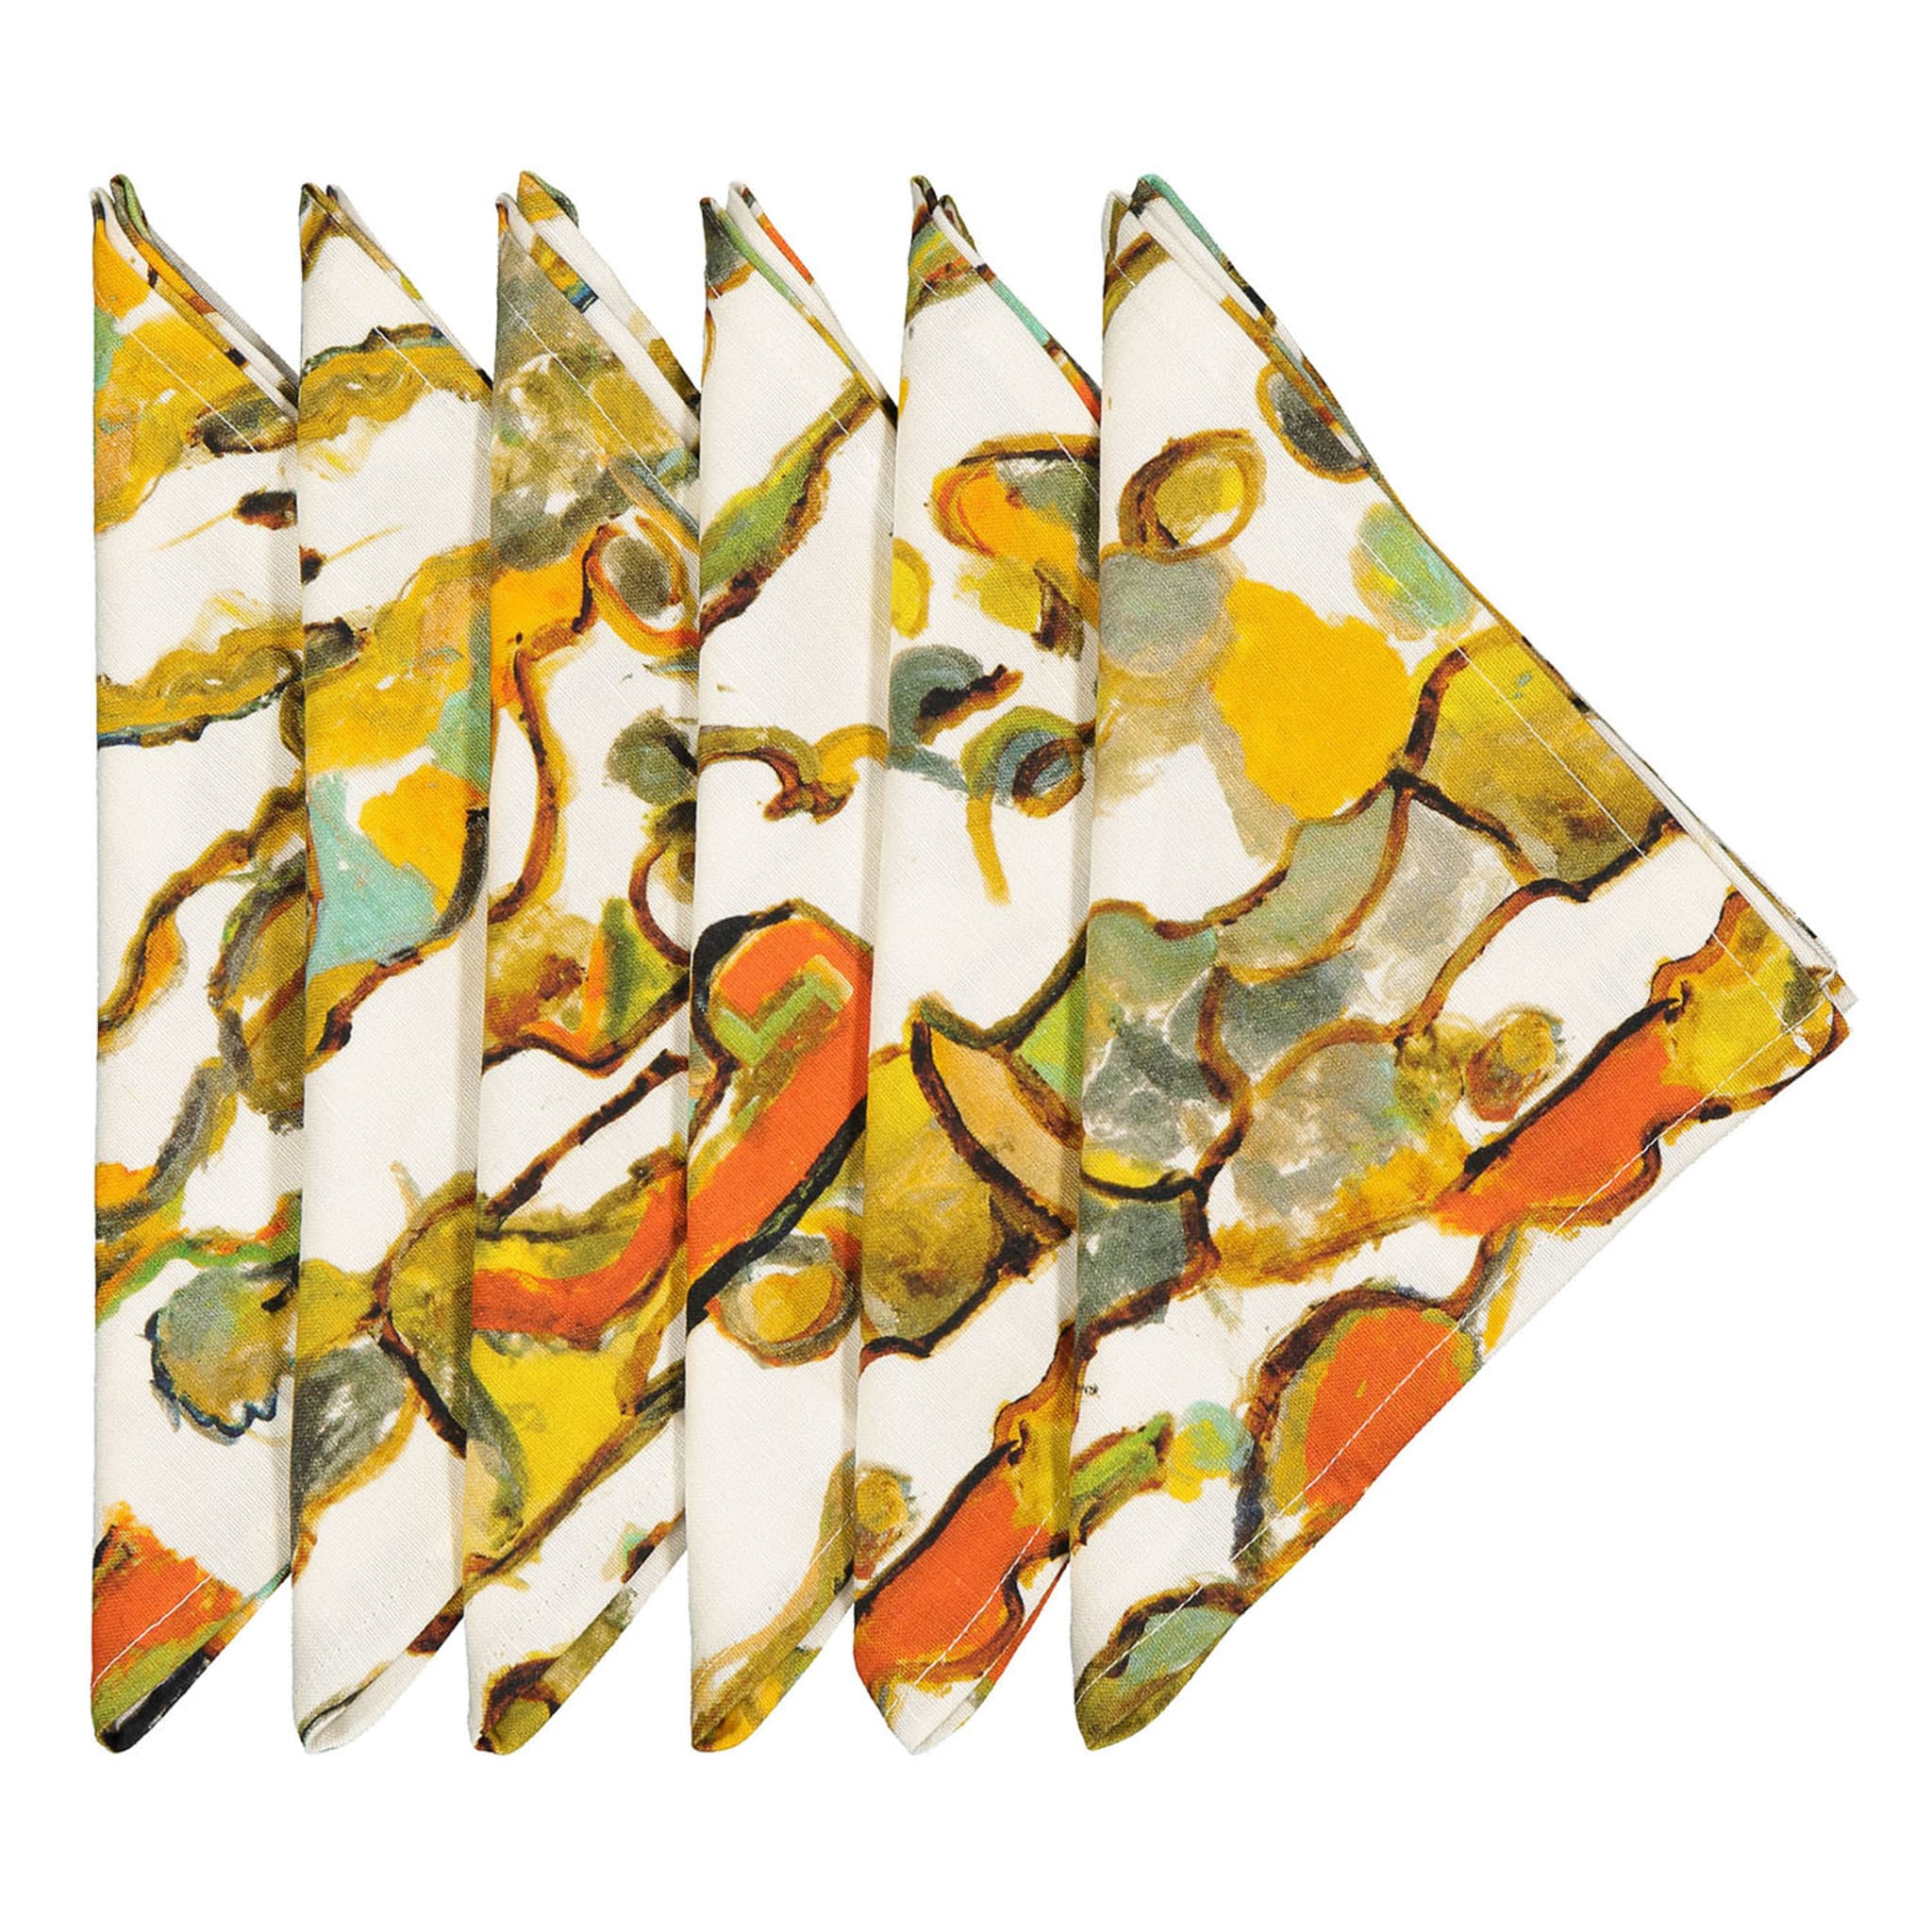 Stromboli Set of 6 print linen napkins - Main view